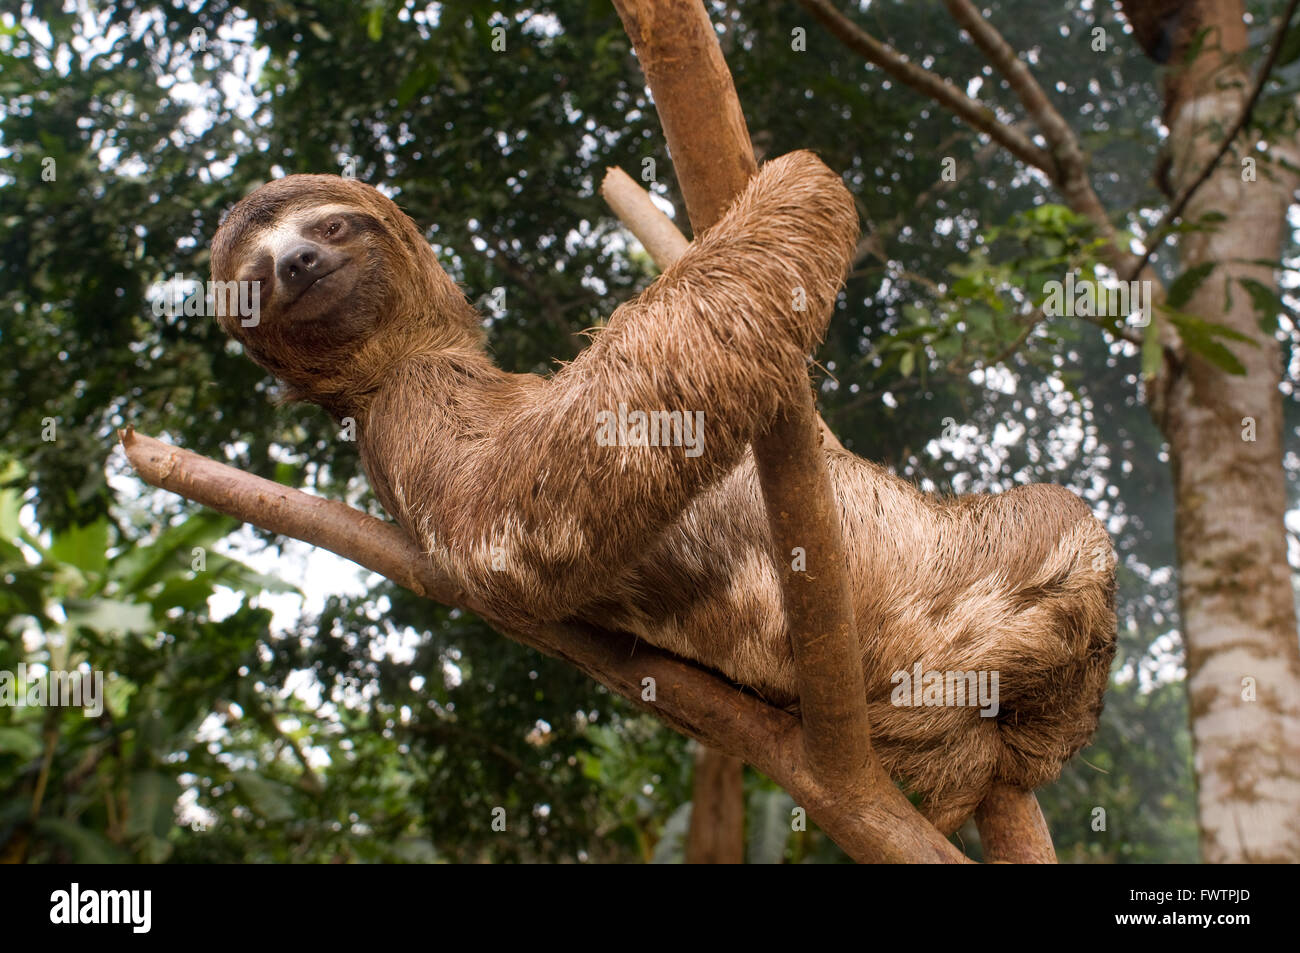 Un bradipo bear salì su un albero in una foresta primaria nella foresta amazzonica, vicino a Iquitos, Loreto, Perù. Bradipi sono di medie dimensioni mammiferi appartenenti alle famiglie Megalonychidae (due-toed bradipi) e Bradypodidae (tre-toed bradipi), classificate in sei specie. Foto Stock